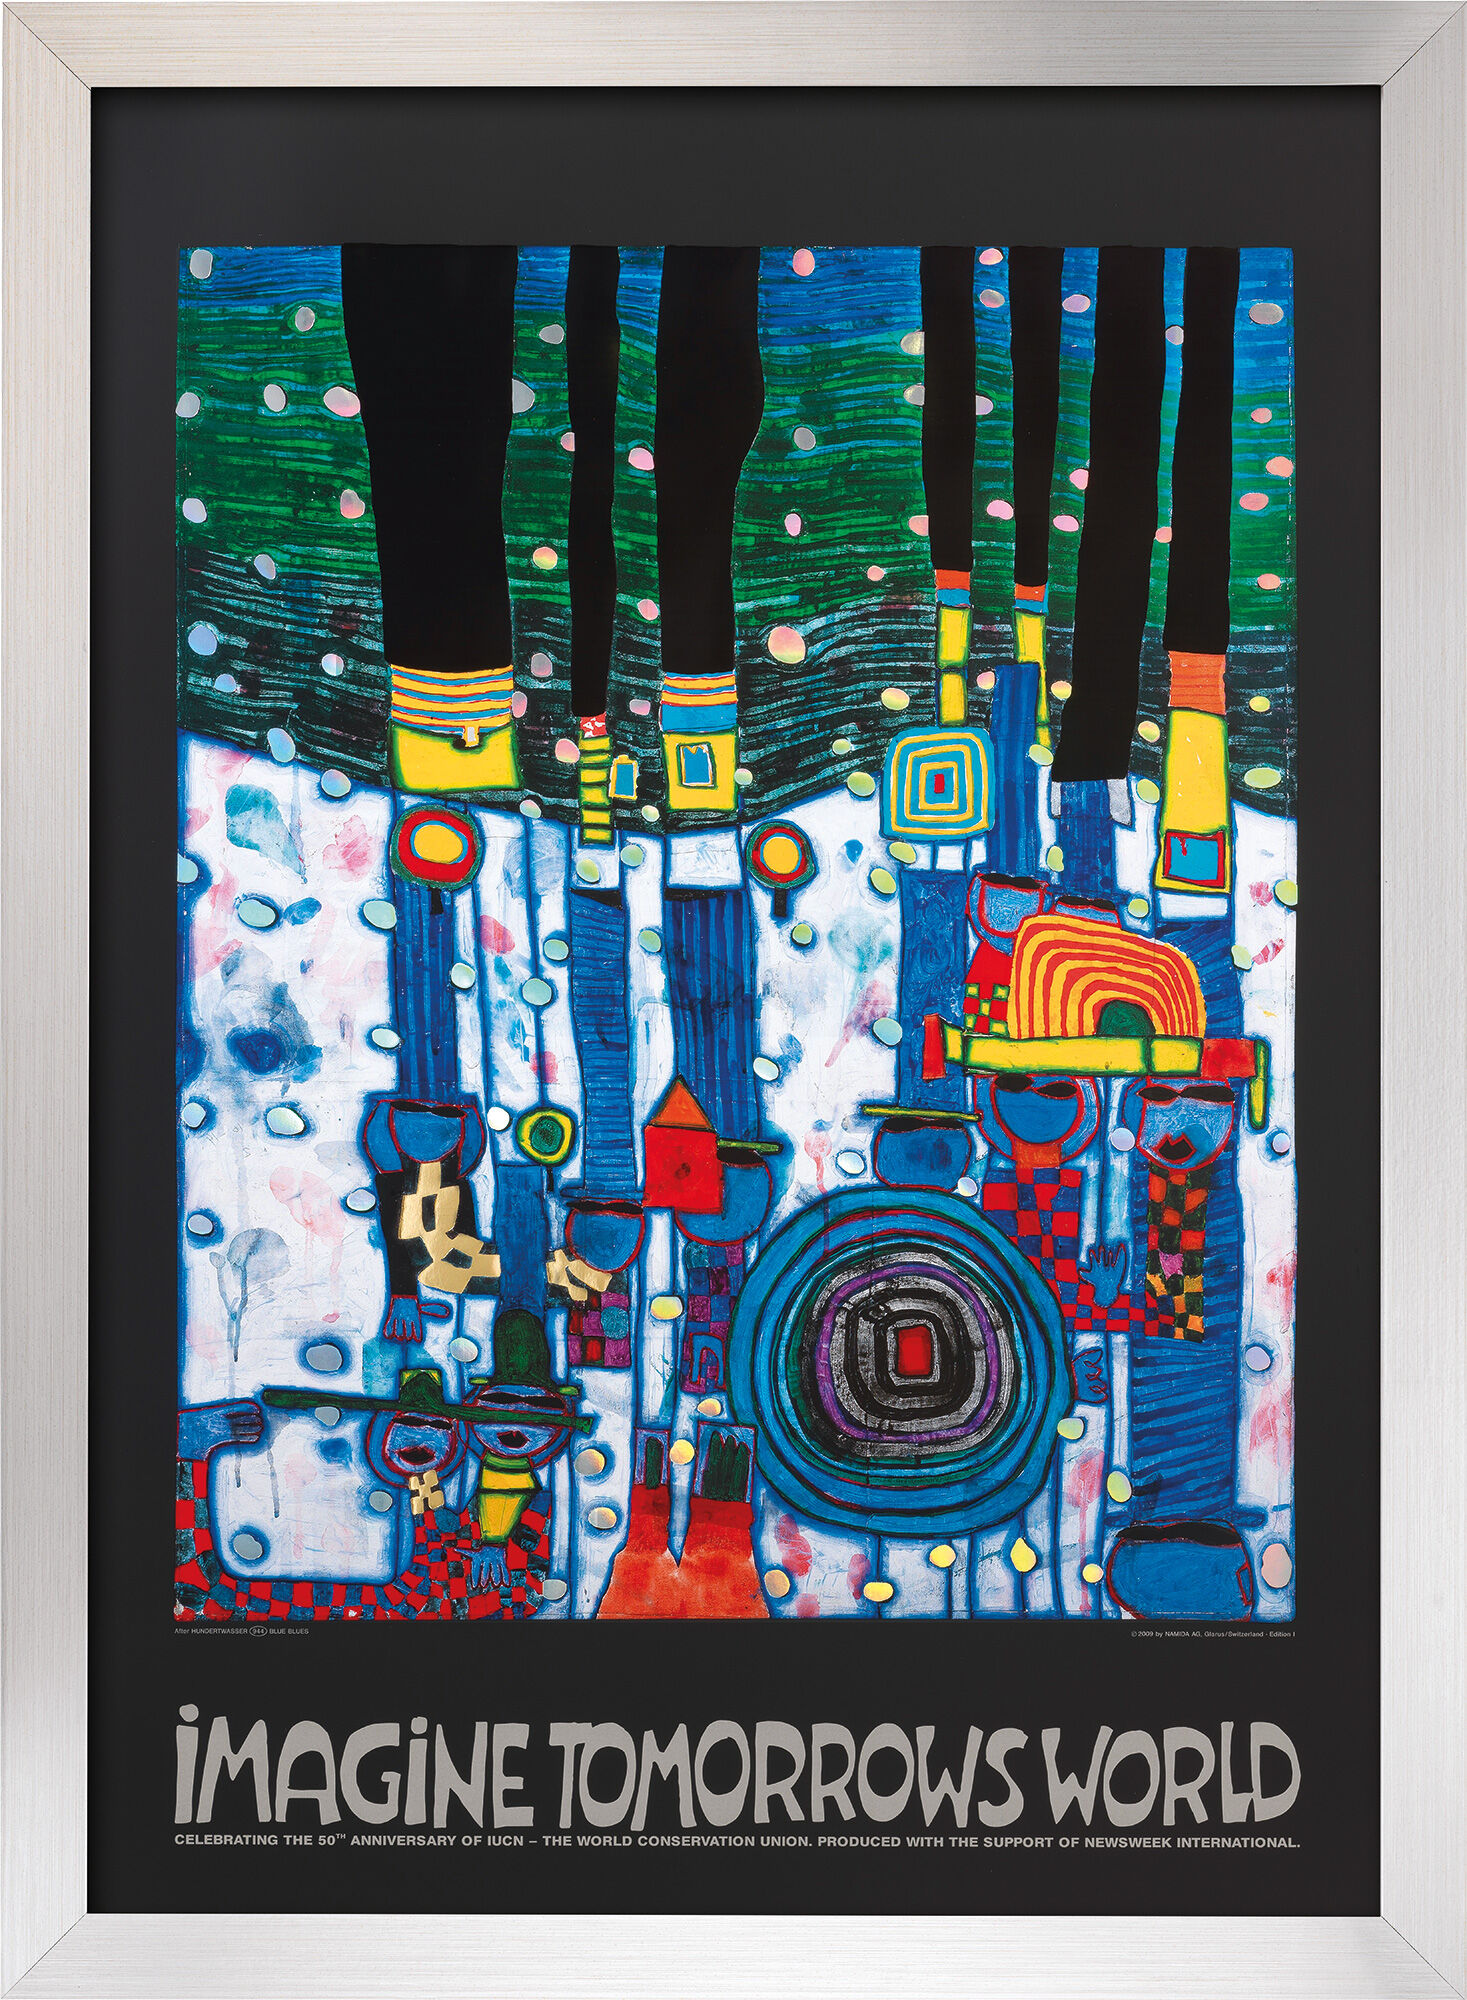 Bild "Imagine tomorrows world" (blaue Version), gerahmt von Friedensreich Hundertwasser